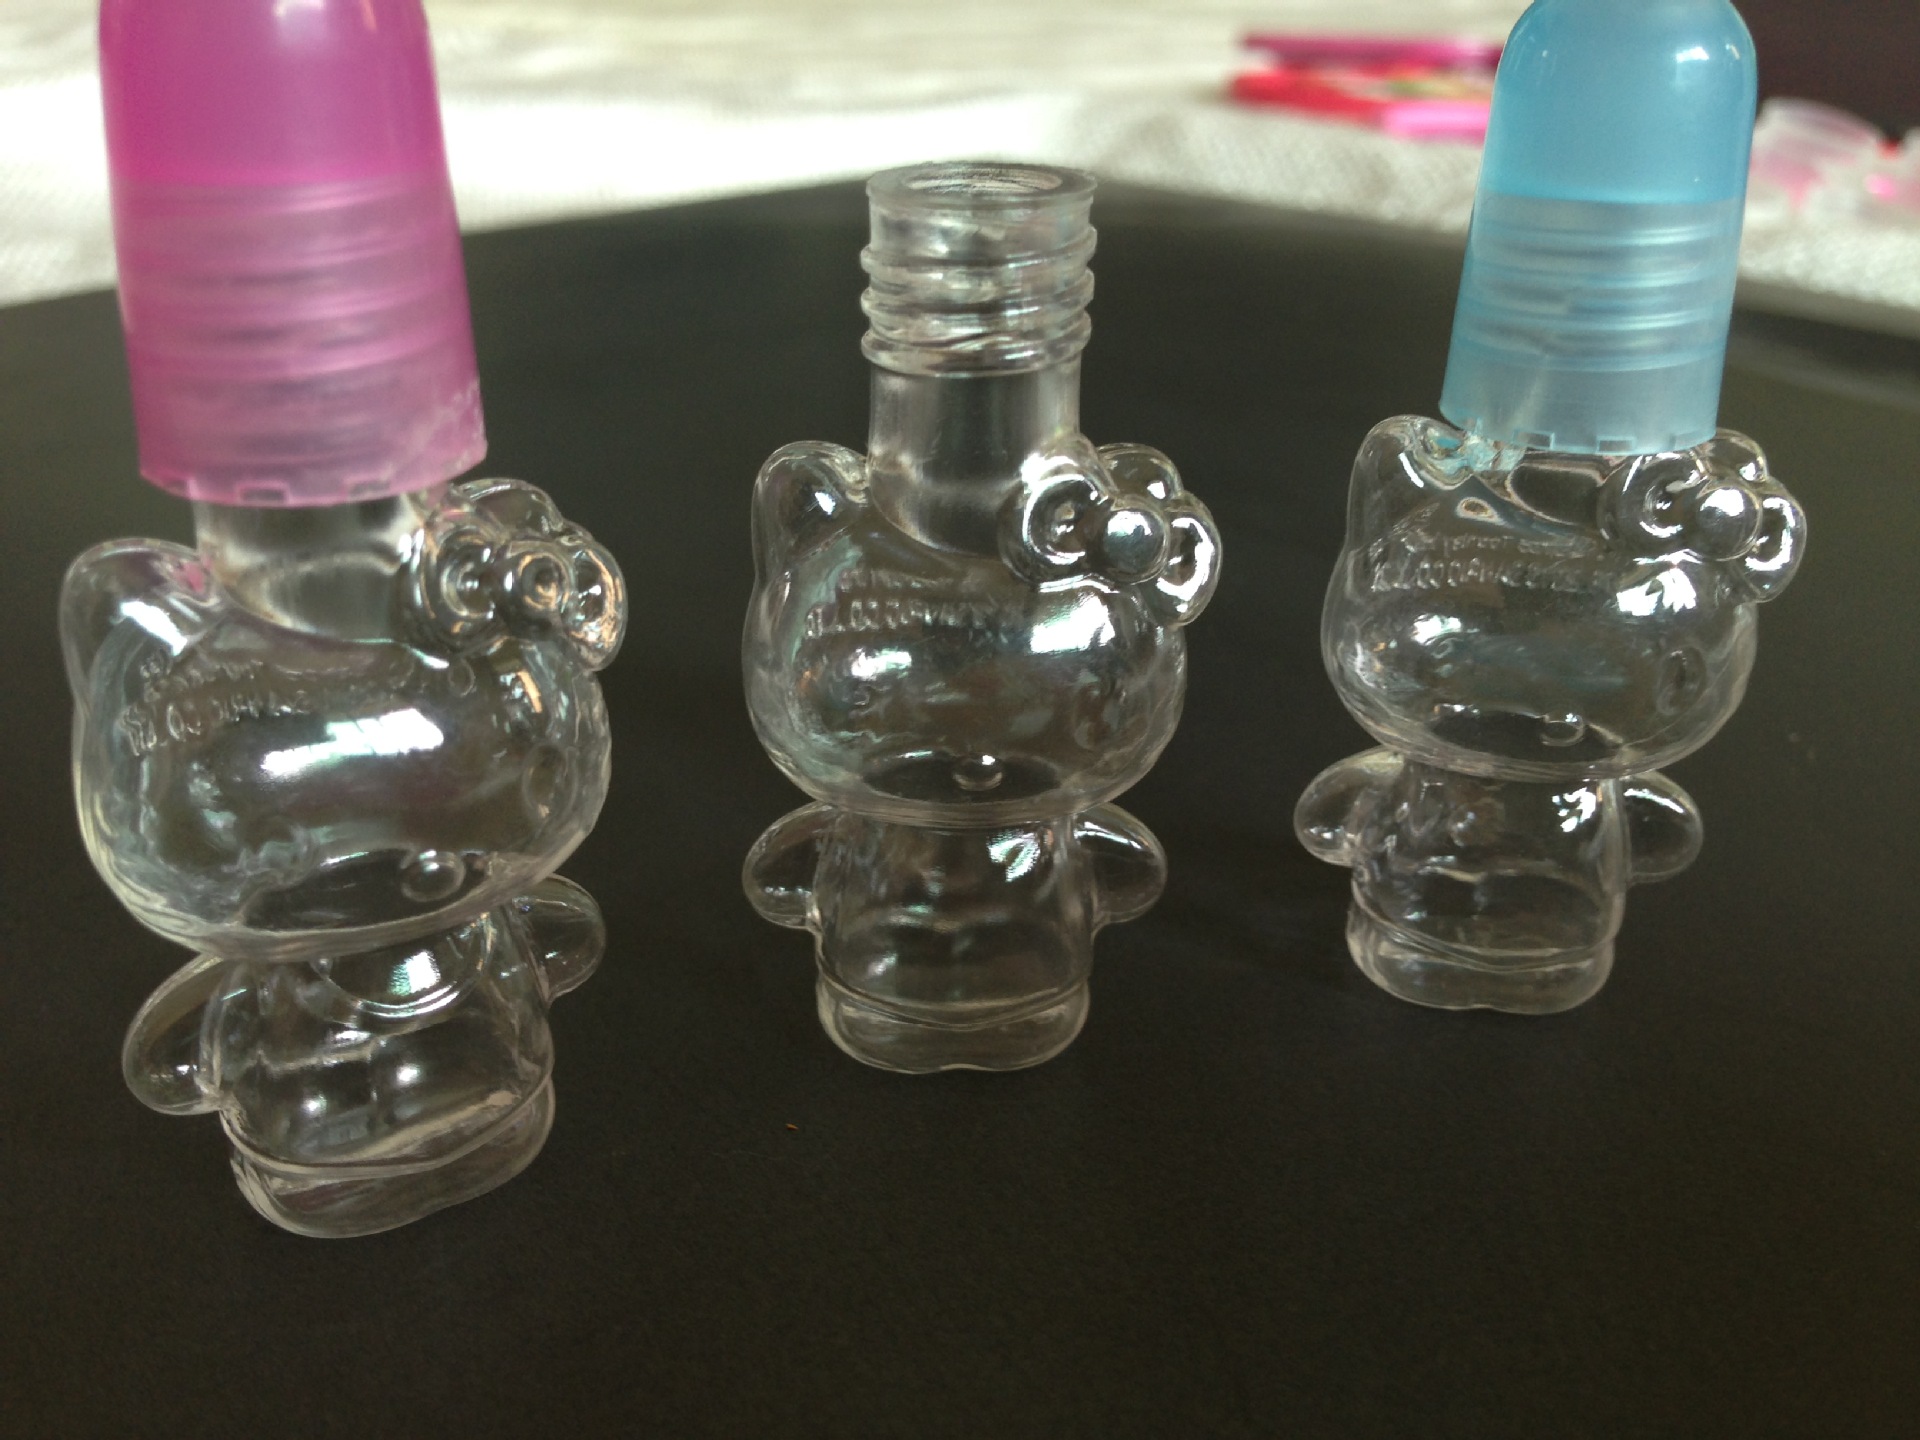 【Hello Kitty 指甲油瓶】价格,厂家,图片,塑料瓶